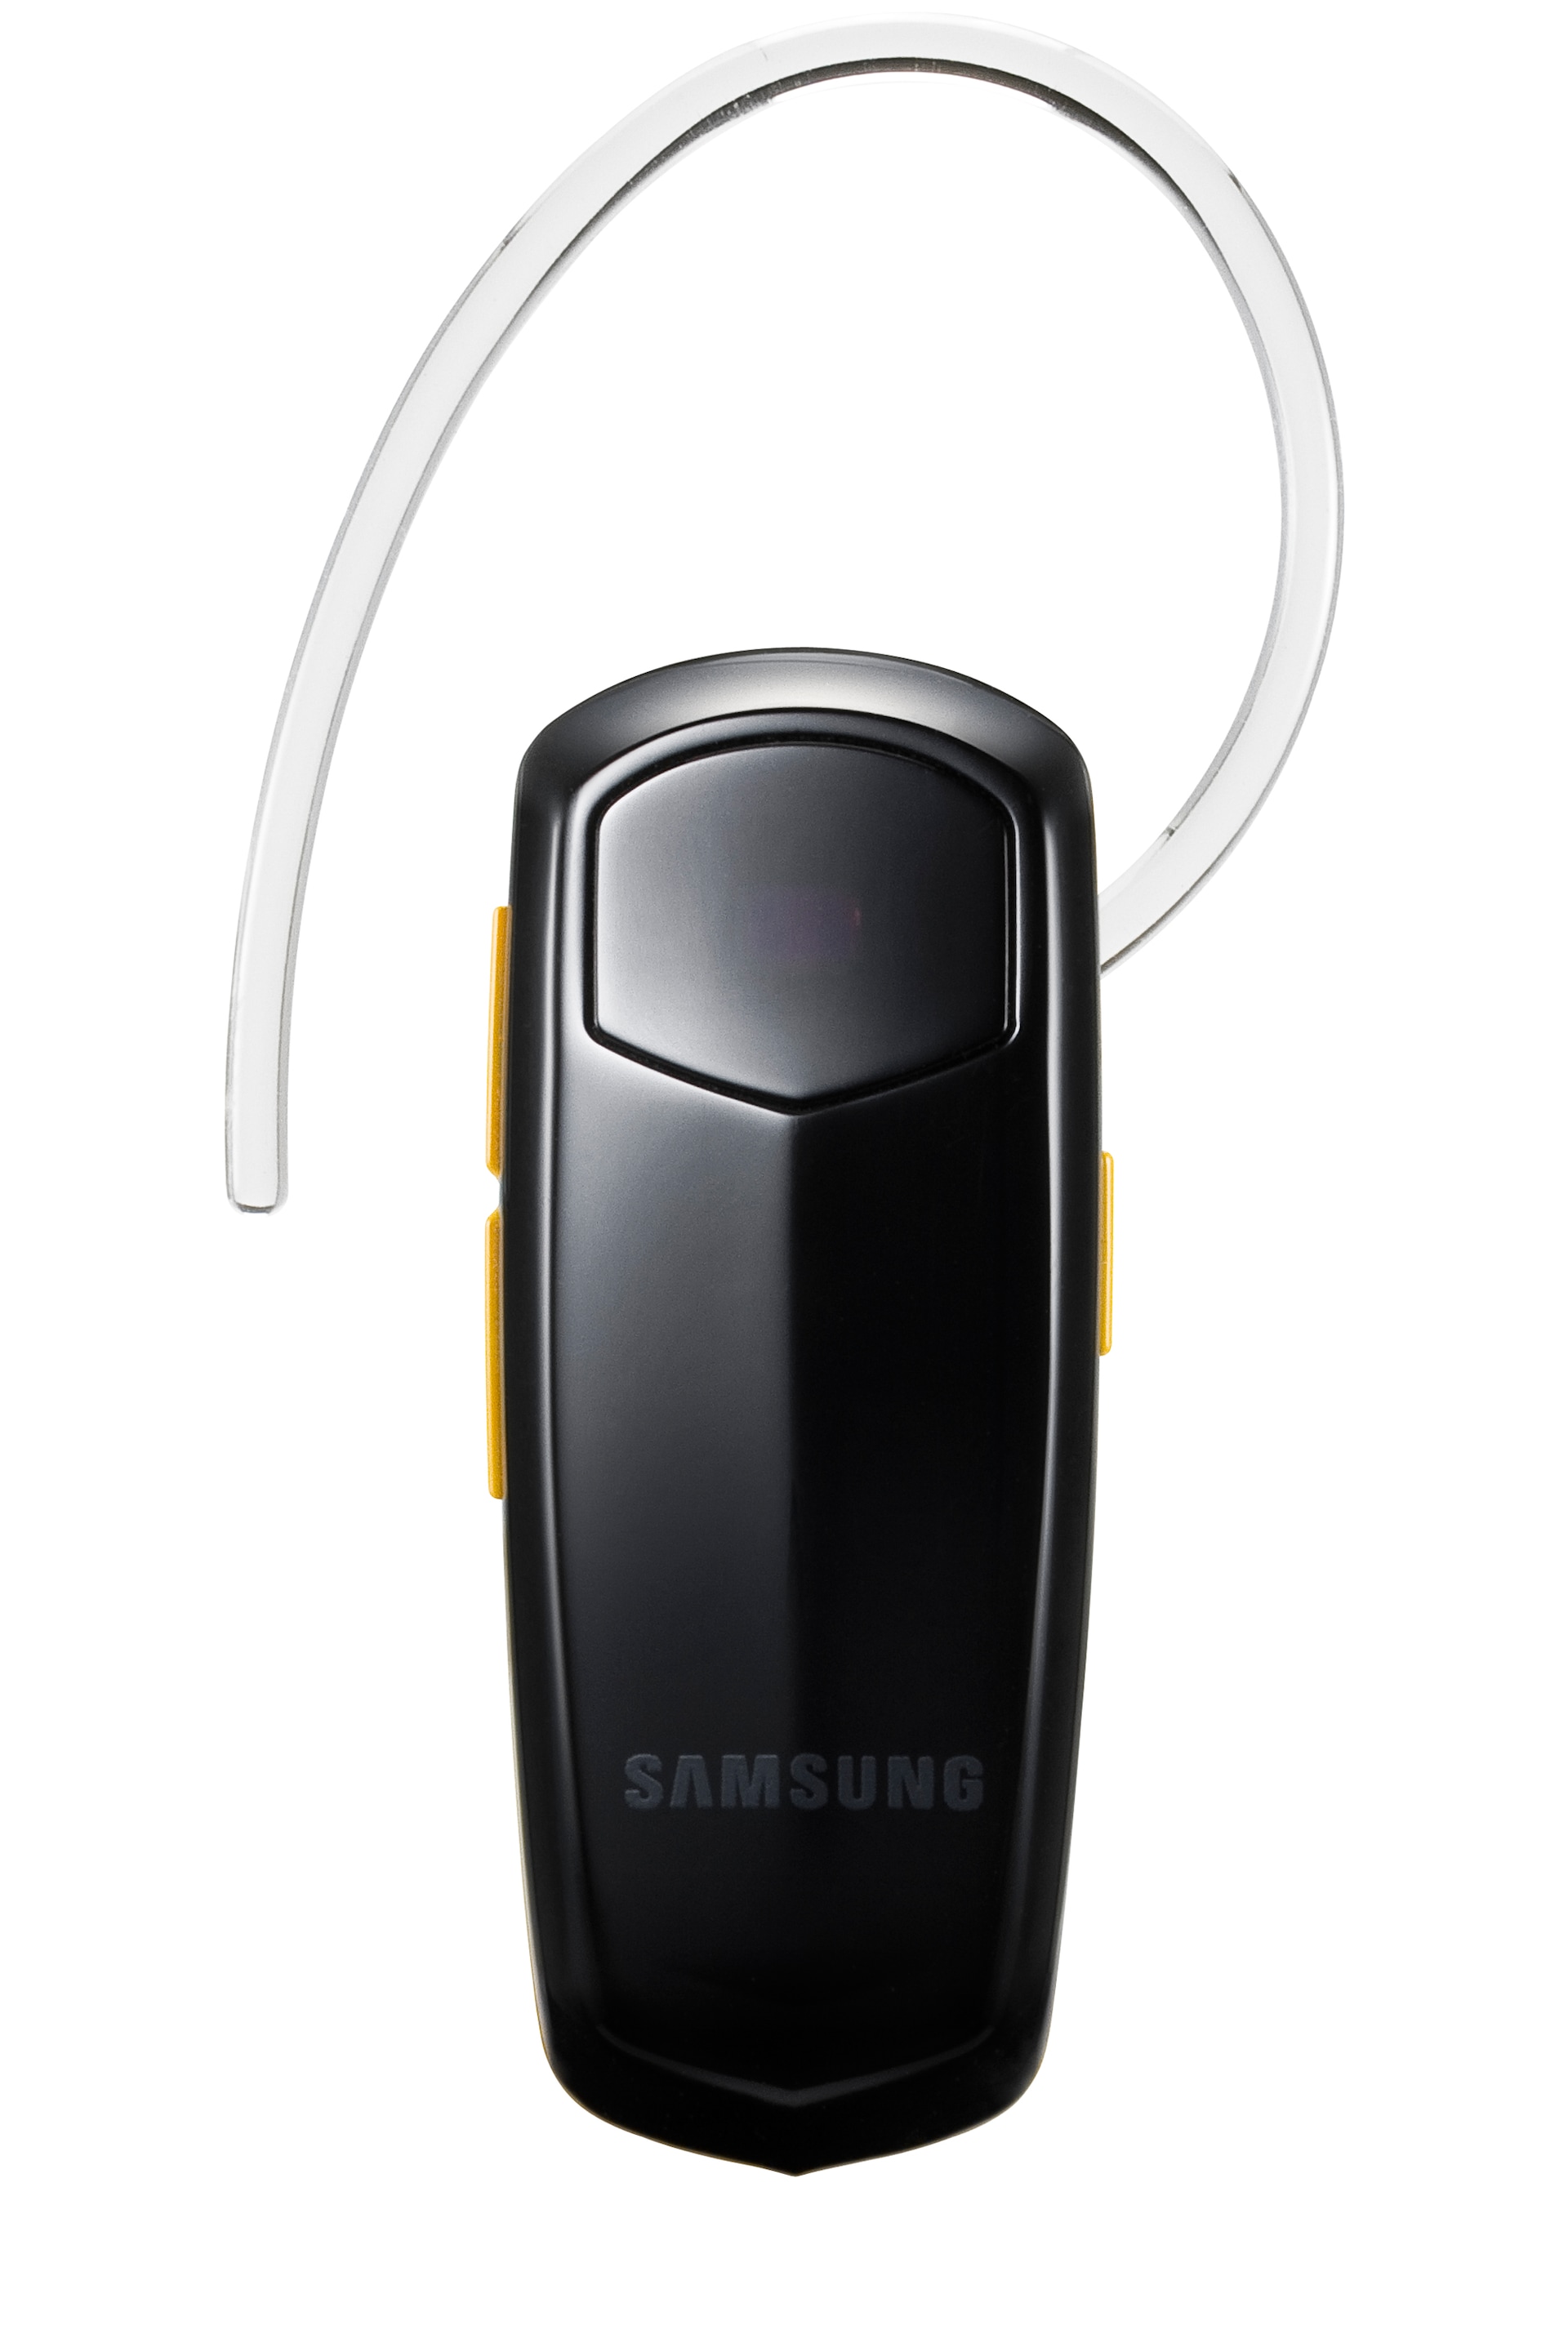 Samsung Corby WEP490, manos libres Bluetooth para jóvenes